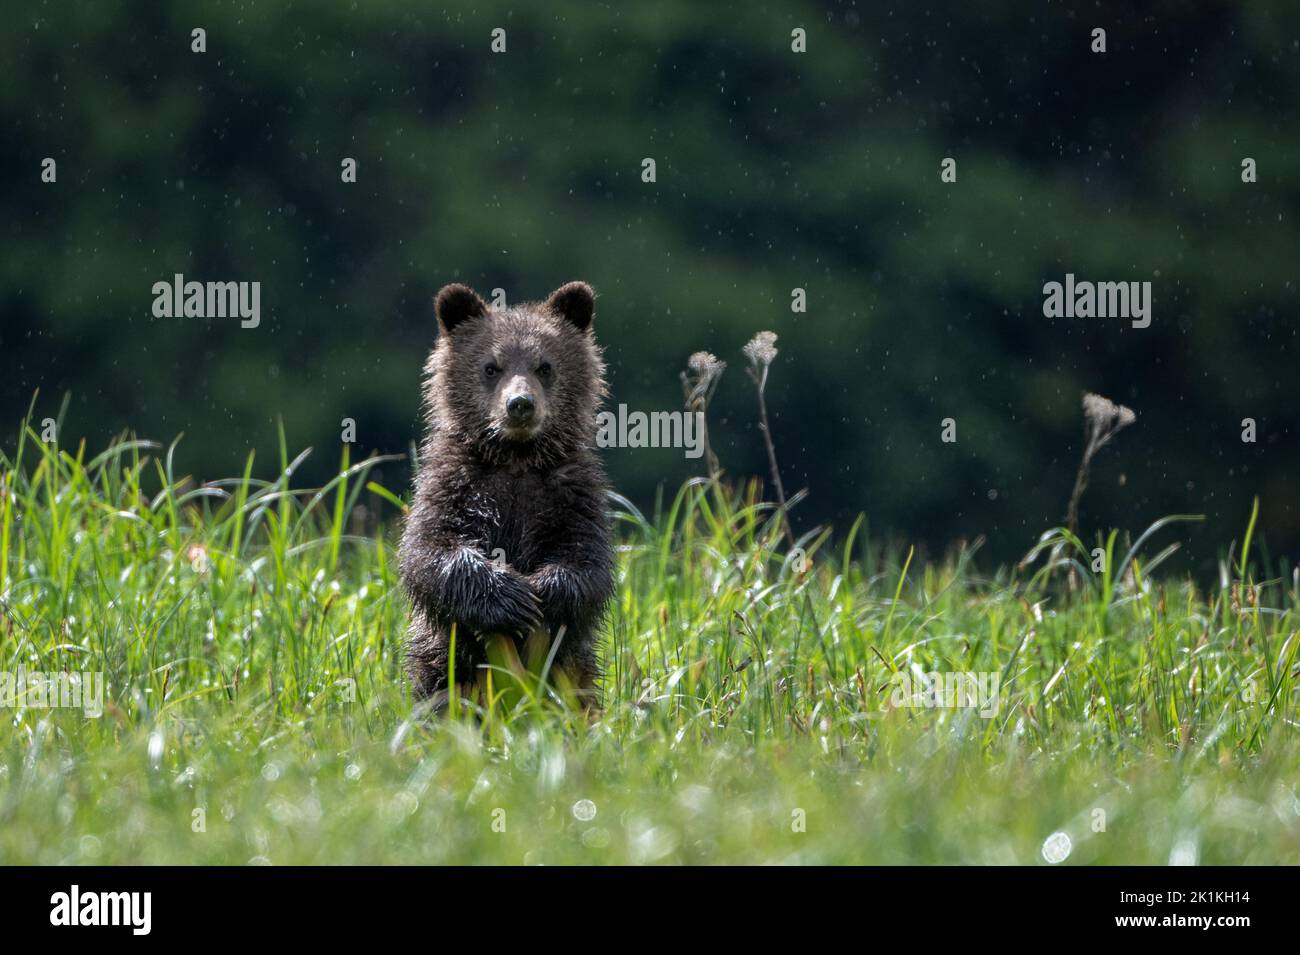 Un simpatico cucciolo nero di orso grizzly, con le sue zampe incrociate, si erge in alta erba di sedge nella foresta pluviale del Grande Orso del Canada. Foto Stock